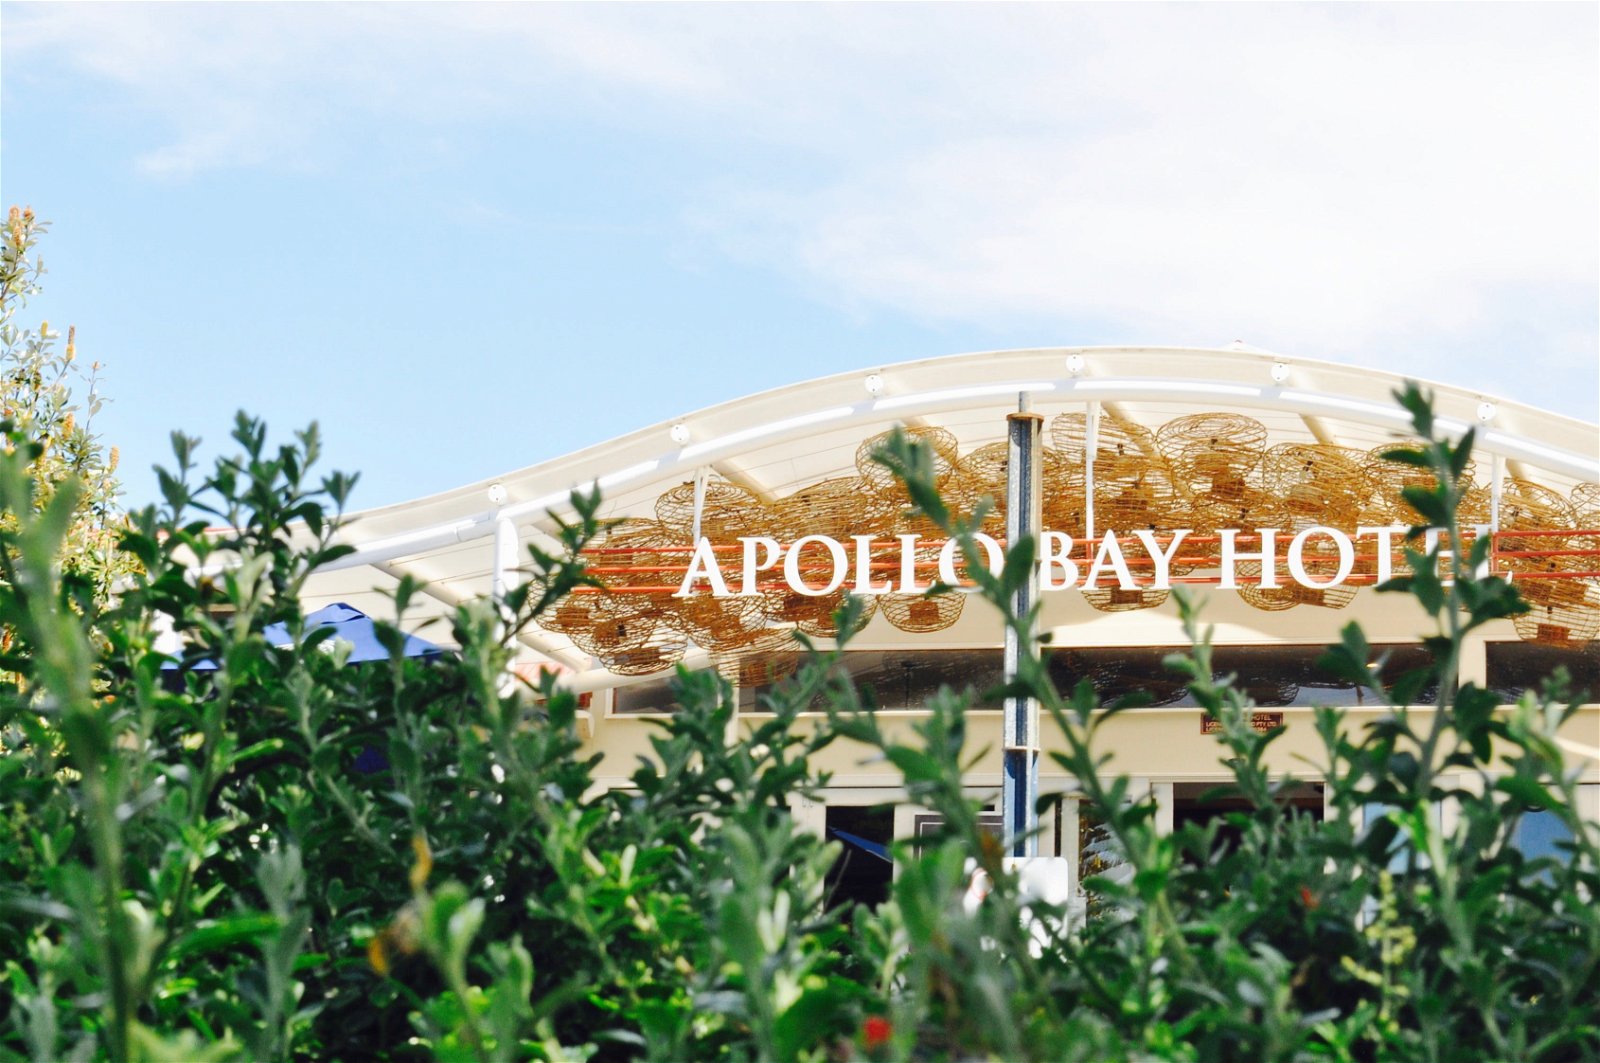 Apollo Bay Hotel - Pubs Sydney